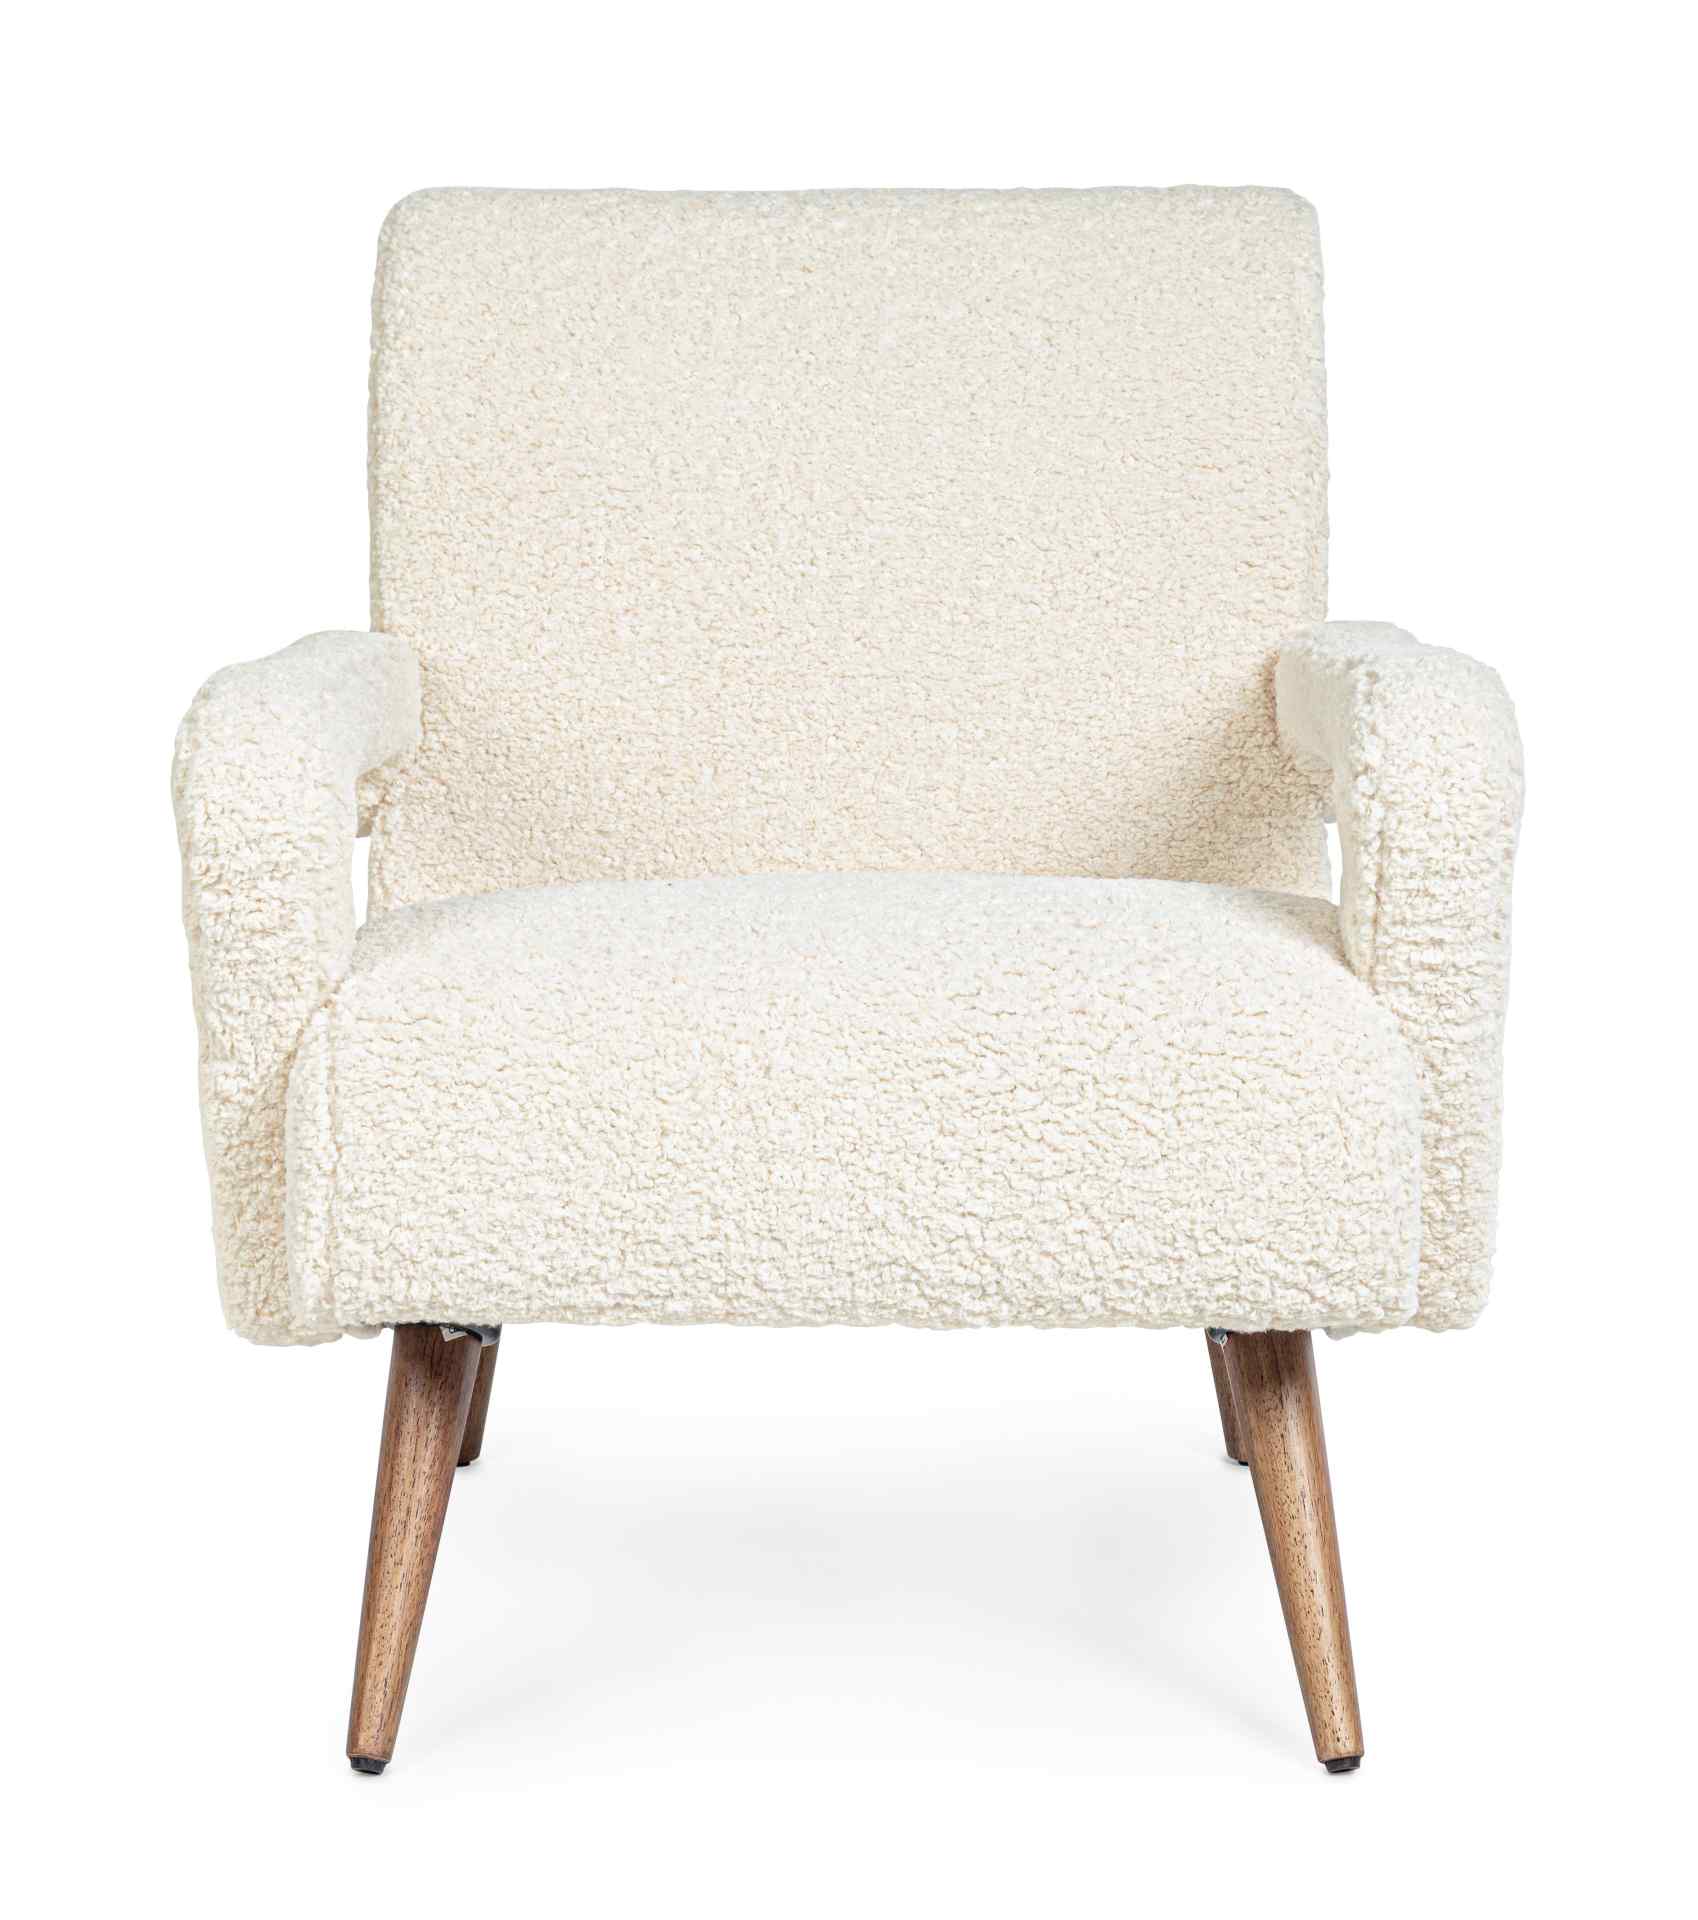 Der Sessel Berna überzeugt mit seinem modernen Design. Gefertigt wurde er aus Stoff in Teddy-Optik, welcher einen weißen Farbton besitzt. Das Gestell ist aus Kautschukholz und hat eine natürliche Farbe. Der Sessel besitzt eine Sitzhöhe von 45 cm. Die Brei